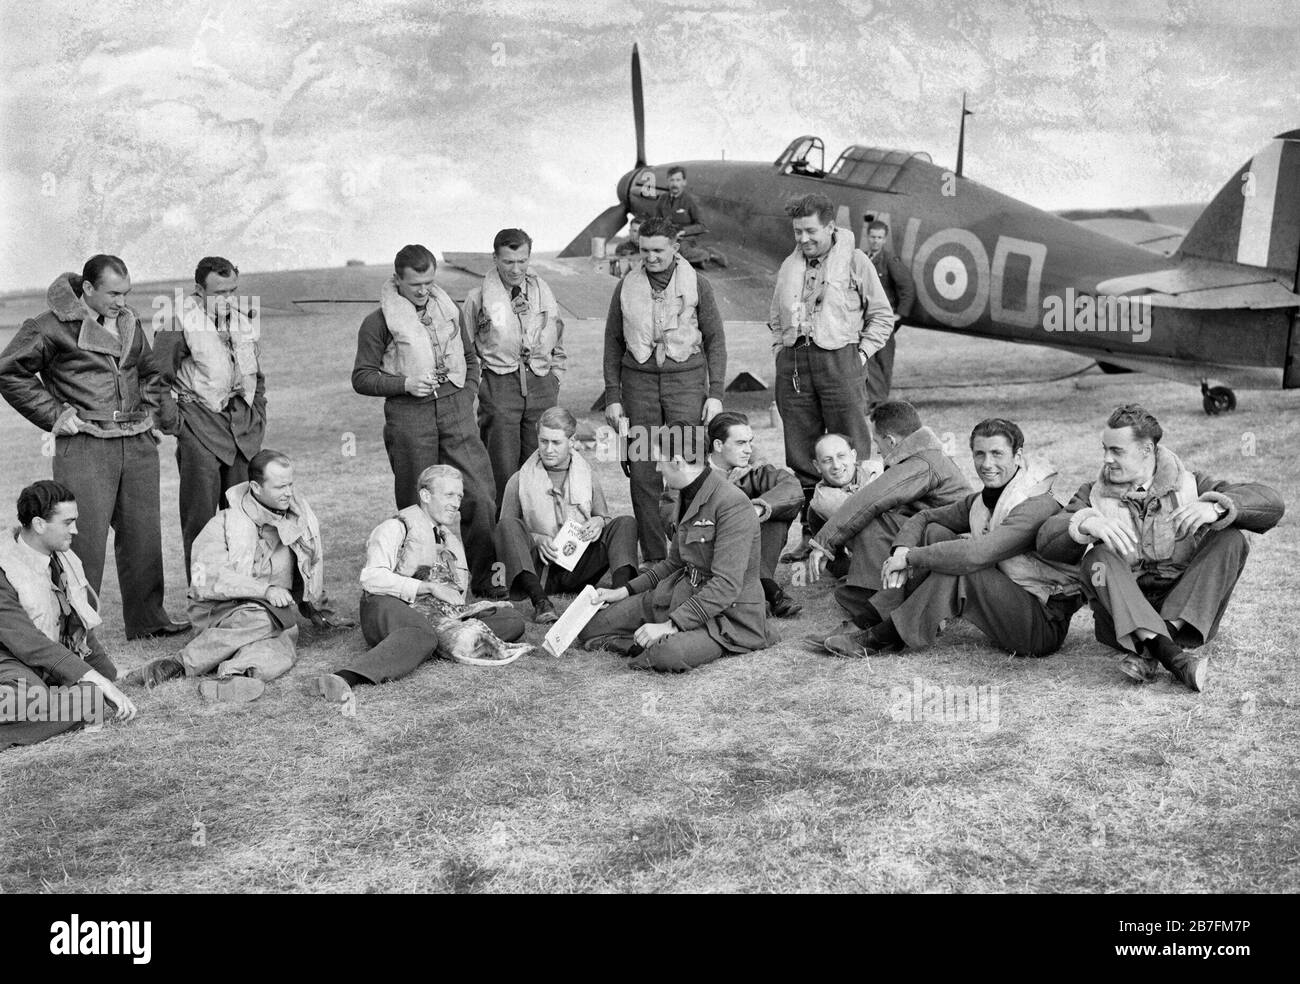 Los pilotos de Checoslovaquia (Nº 310) Squadron RAF en frente de Hawker Hurricane Mk I en Duxford, Cambridgeshire, 7 de septiembre de 1940. Los pilotos de Checoslovaquia (Nº 310) de Checoslovaquia Squadron RAF y sus comandantes de vuelo británico agrupados en frente de Hawker Hurricane Mark I, P3143-D 'NN', en Duxford, Cambridgeshire. Son (de pie, de izquierda a derecha); piloto oficial J Vopalecuy Janduch, el sargento, el sargento R Puda, el sargento K Seda, el sargento B Furst y el Sargento R Zima: (sentados, de izquierda a derecha); piloto oficial W Goth, el Teniente de Aviación J Maly, el Teniente de Vuelo G L Sinclair, Flying Officer J E Boulton, fli Foto de stock